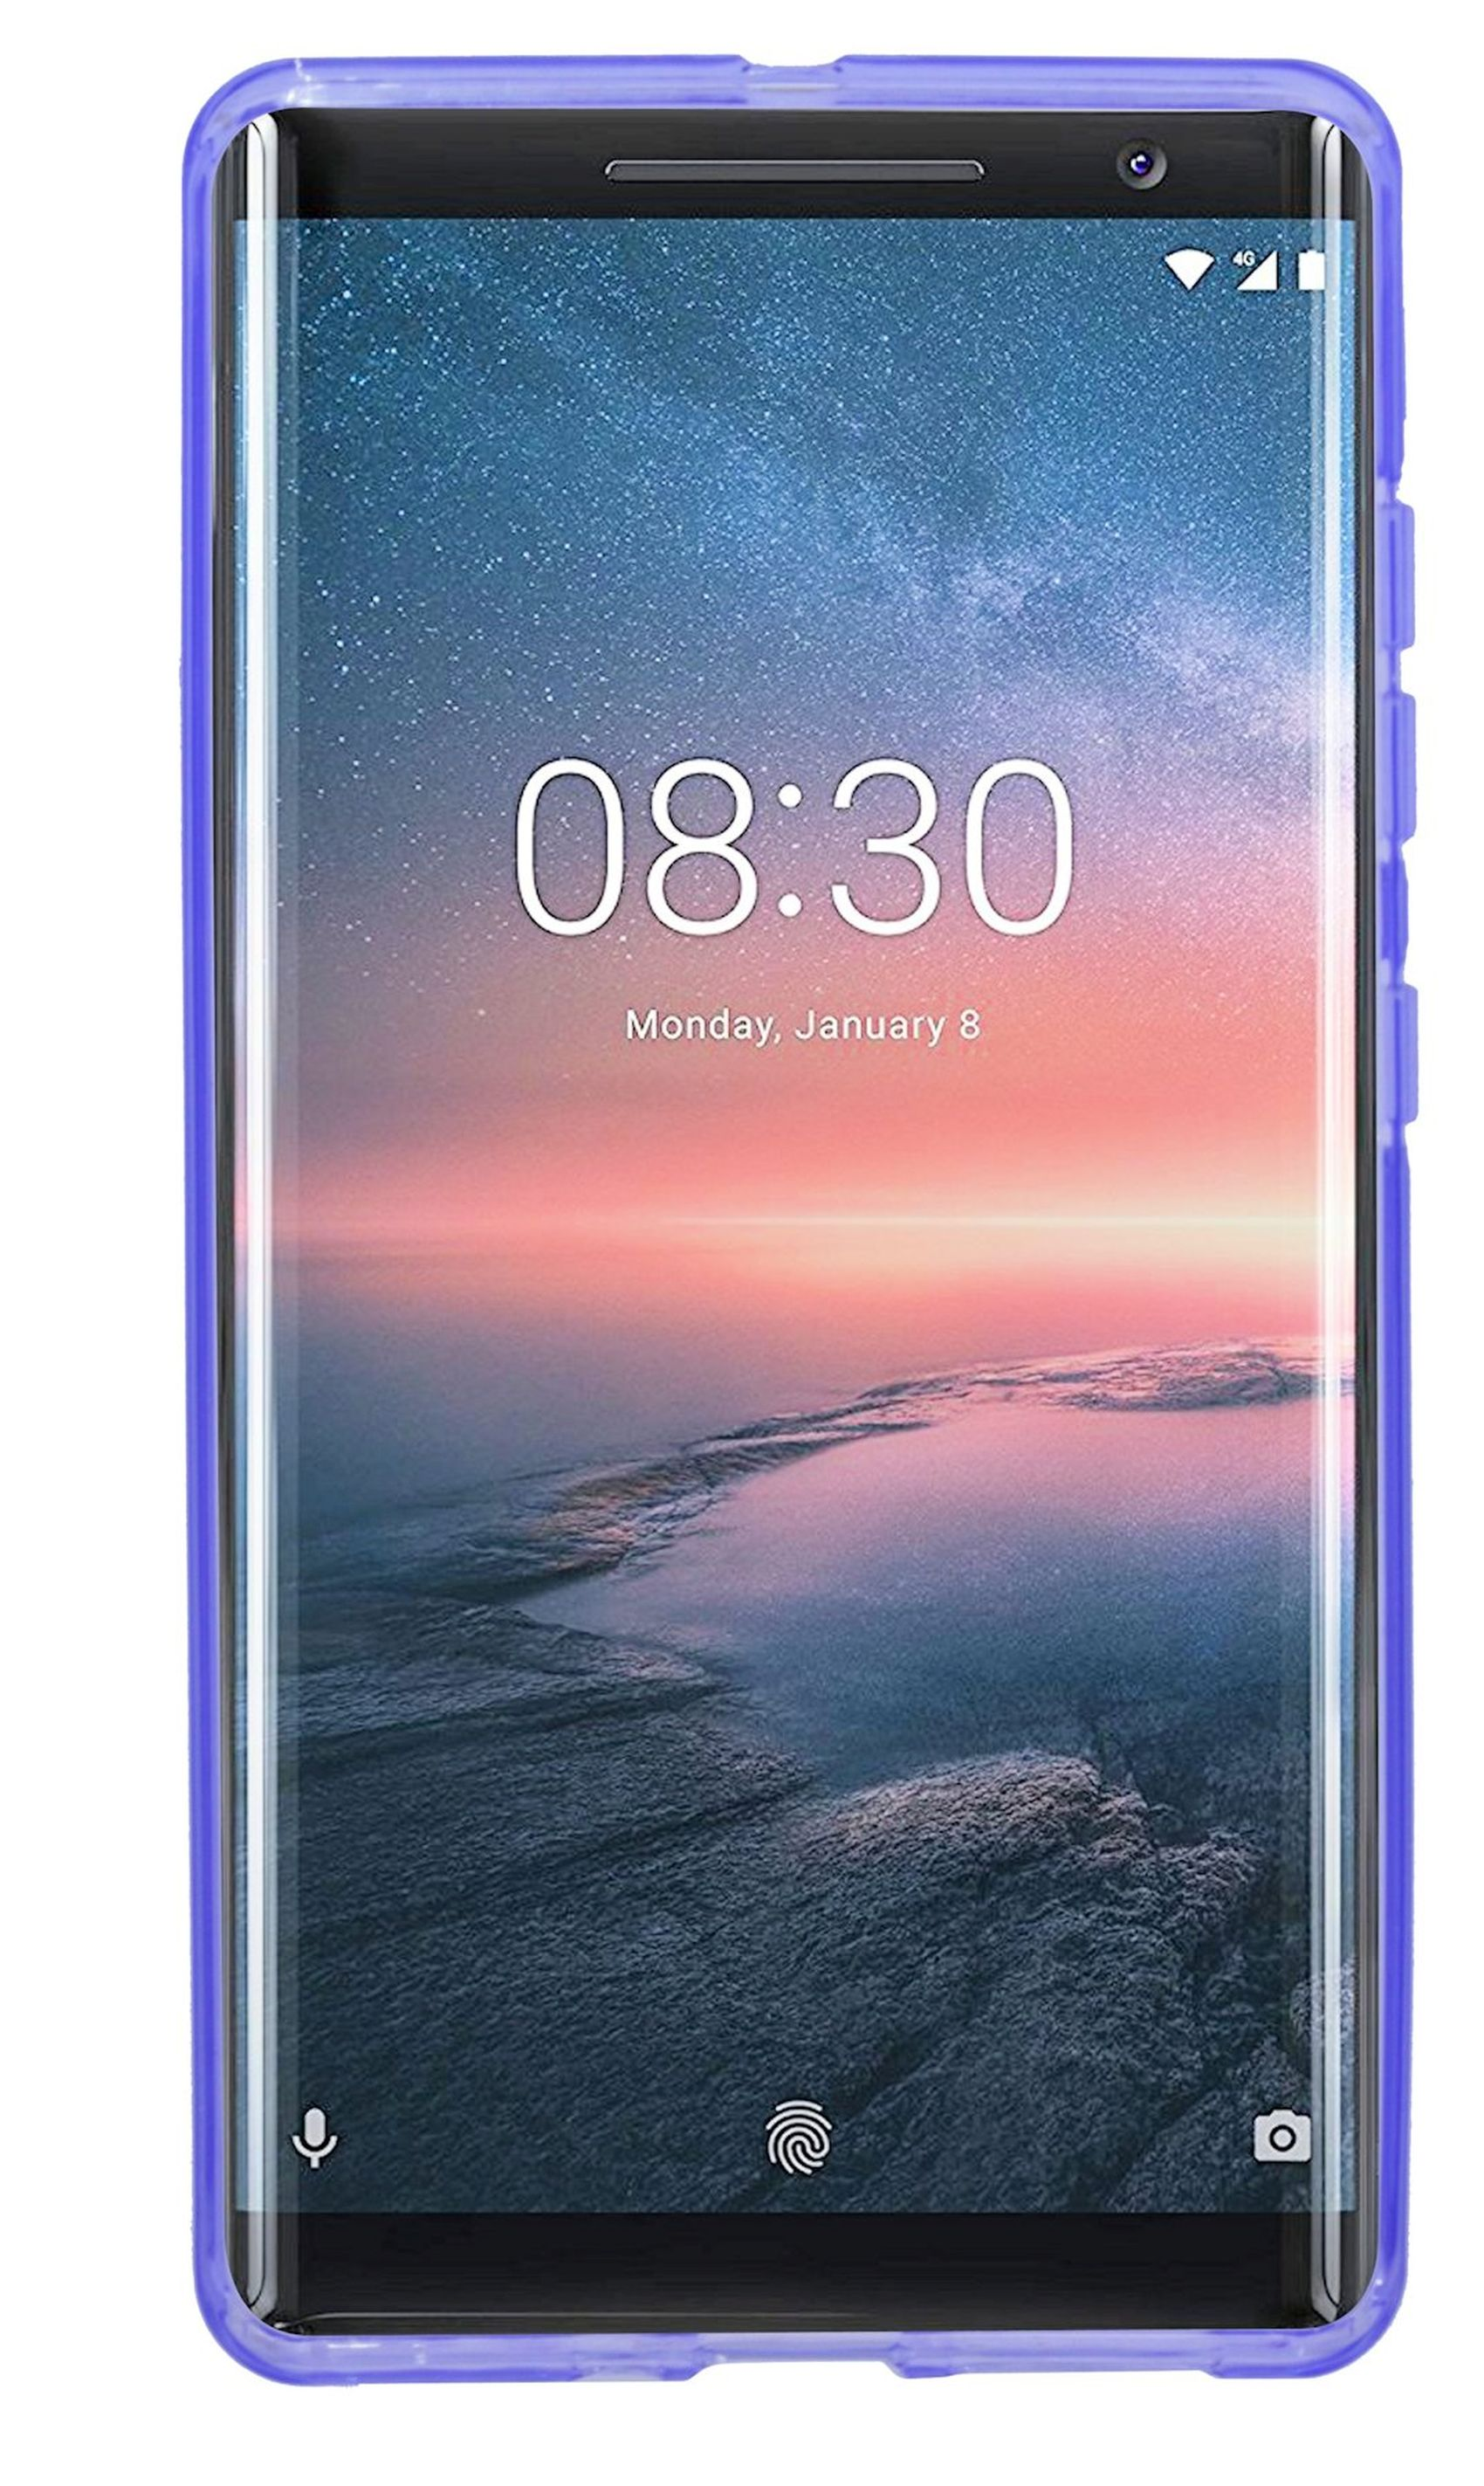 Violett S-Line Cover, COFI Sirocco, Bumper, 8 Nokia,